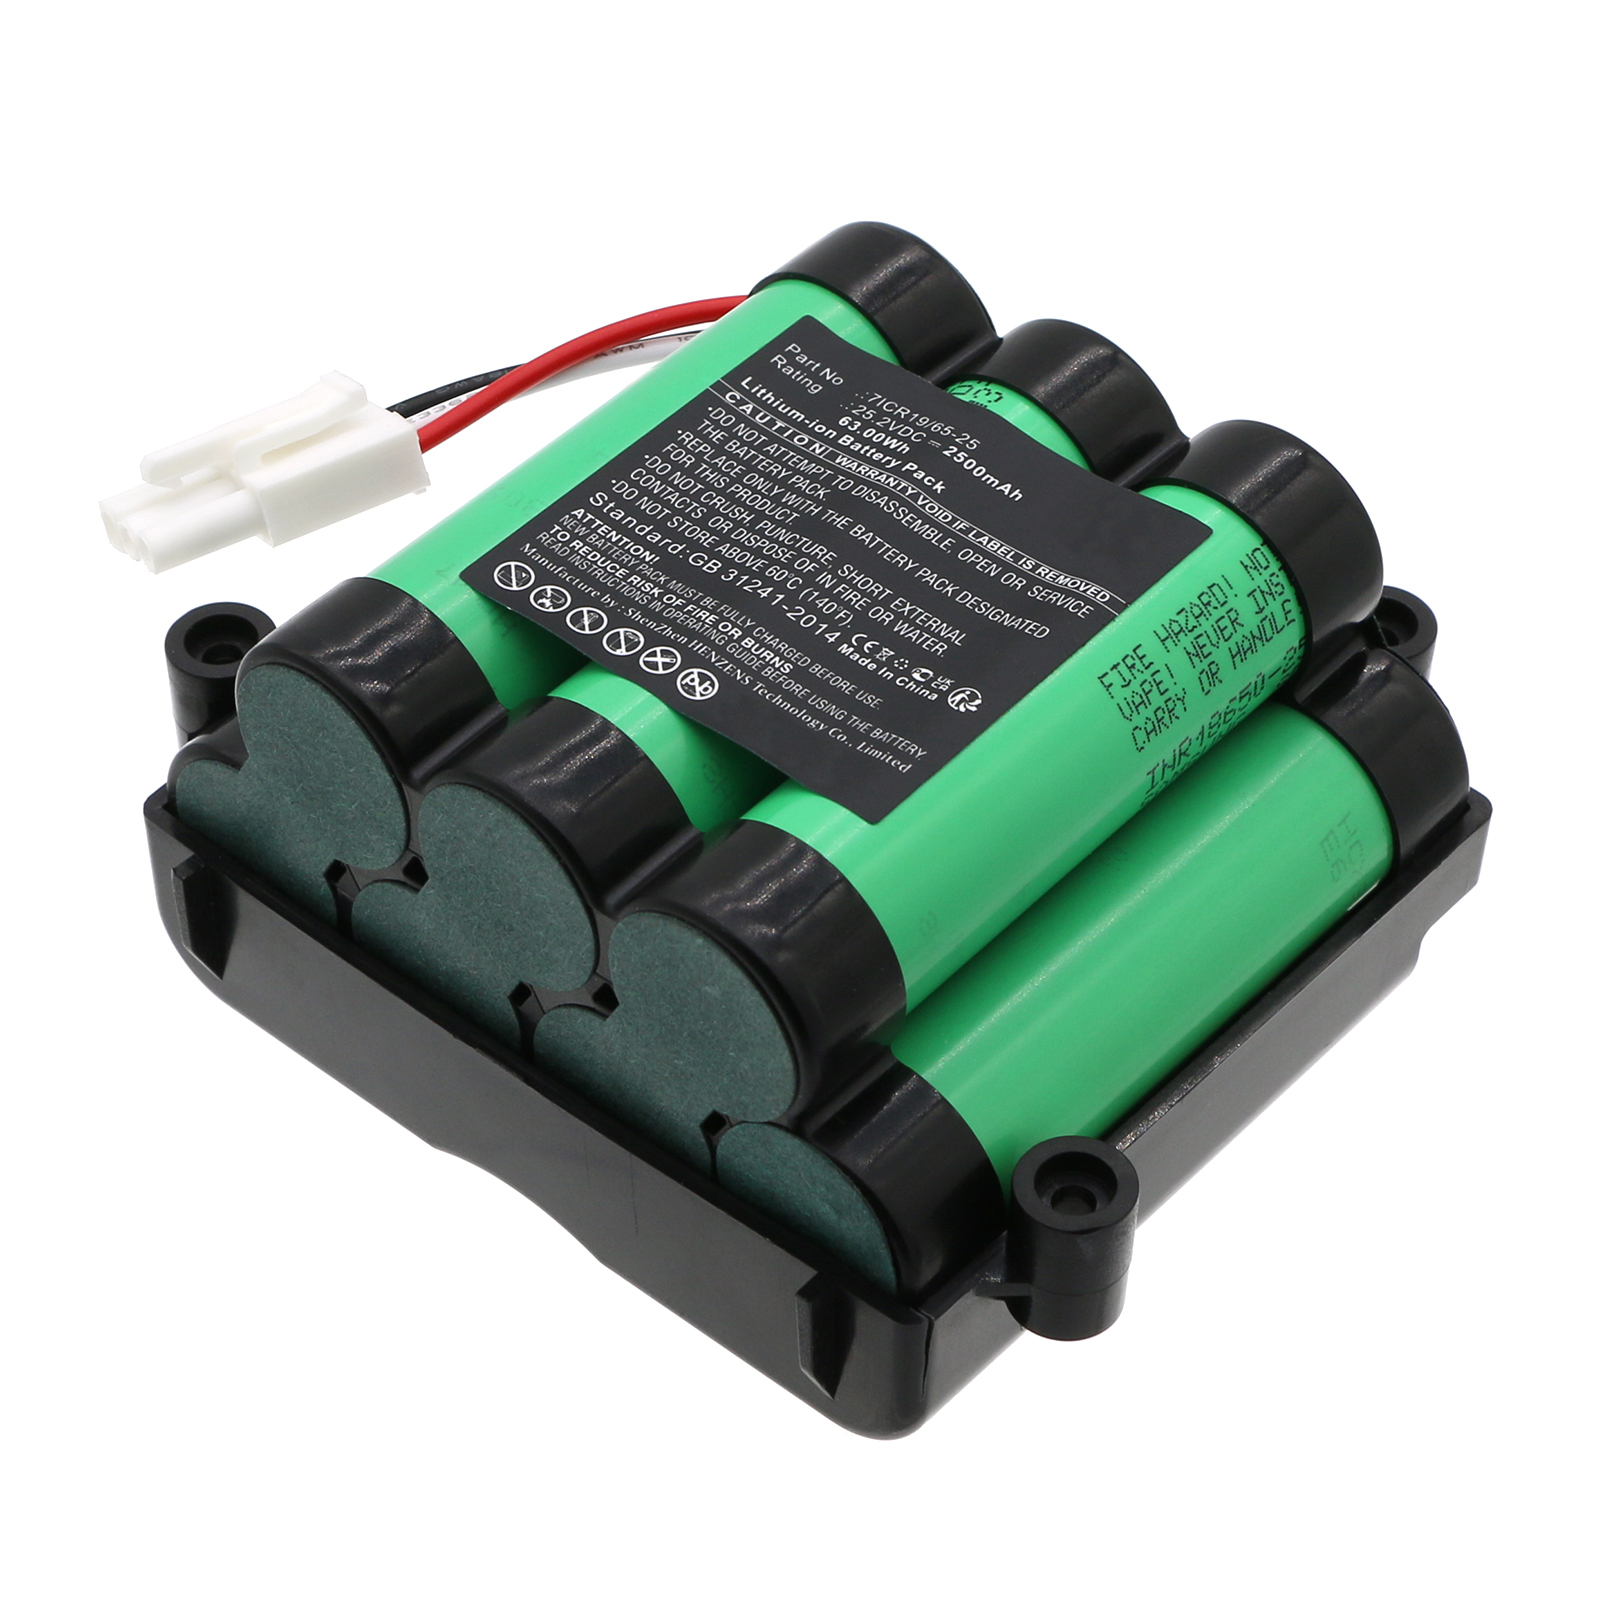 Synergy Digital Vacuum Cleaner Battery, Compatible with Philips 7ICR19/65-25 Vacuum Cleaner Battery (Li-ion, 25.2V, 2500mAh)